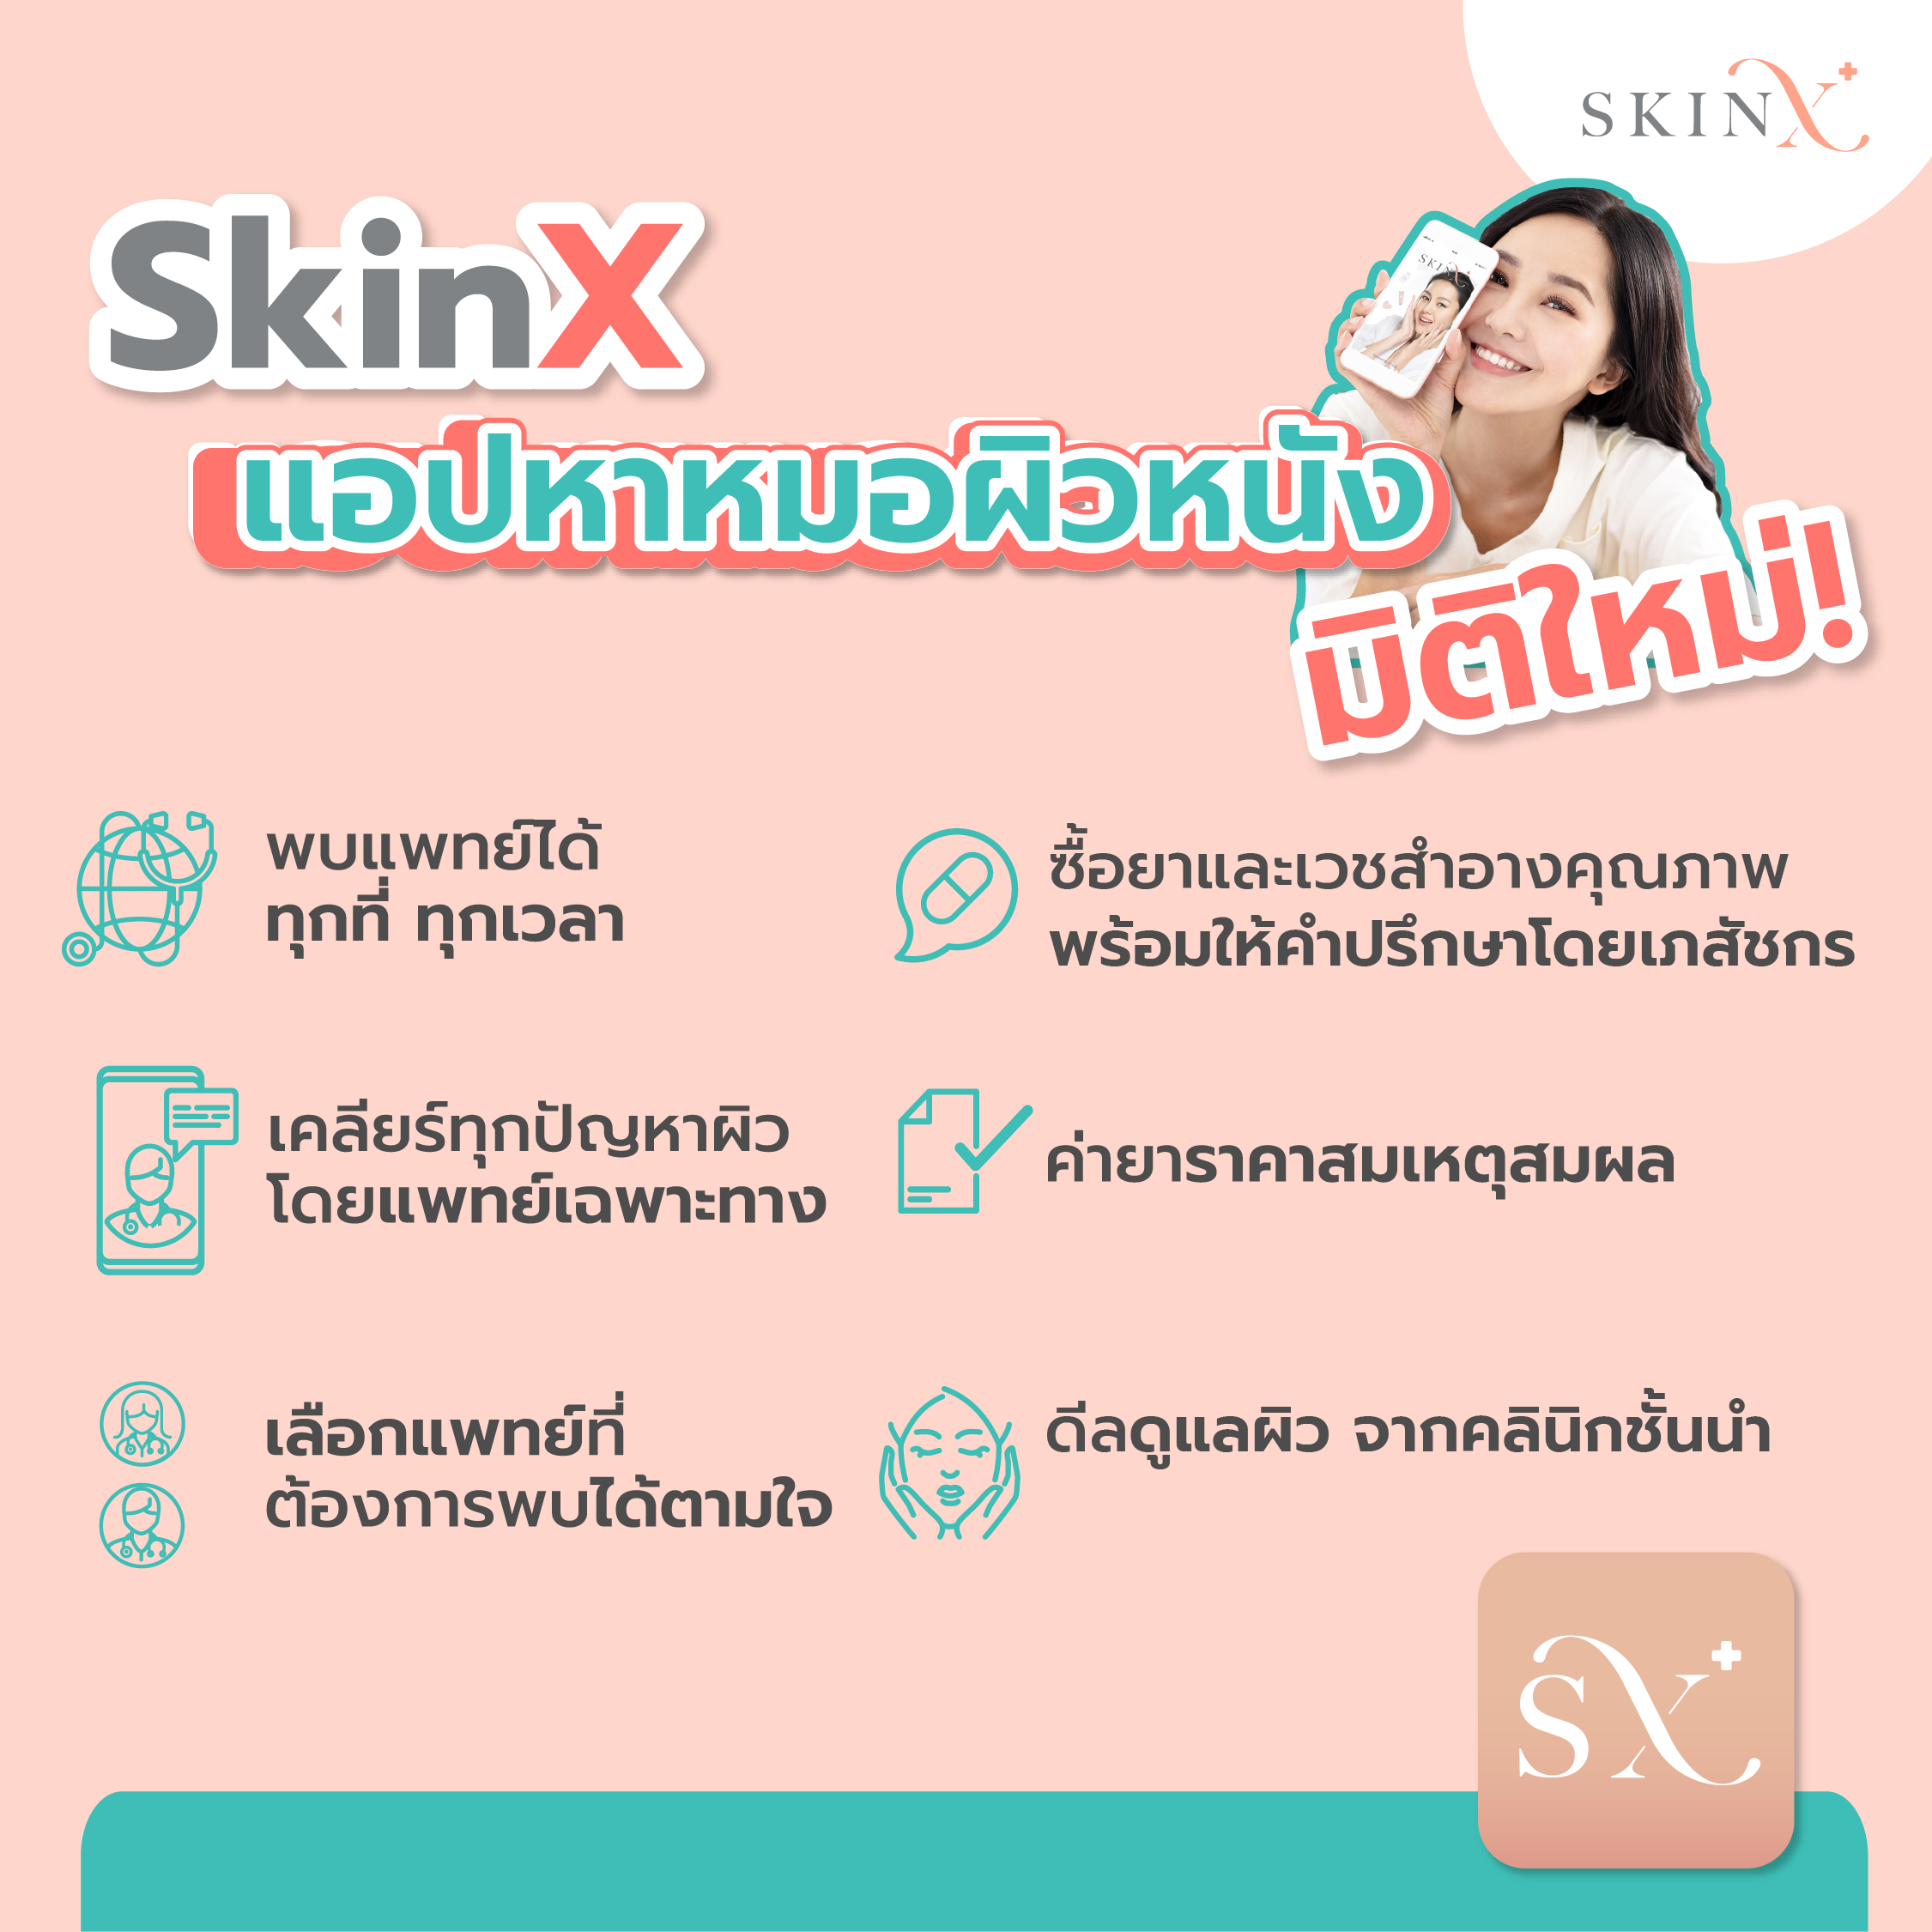 ข้อมูลเพิ่มเติมของ SkinX E-Vo ส่วนลด 1,000 บาท สำหรับทุกการใช้จ่ายใน SkinX